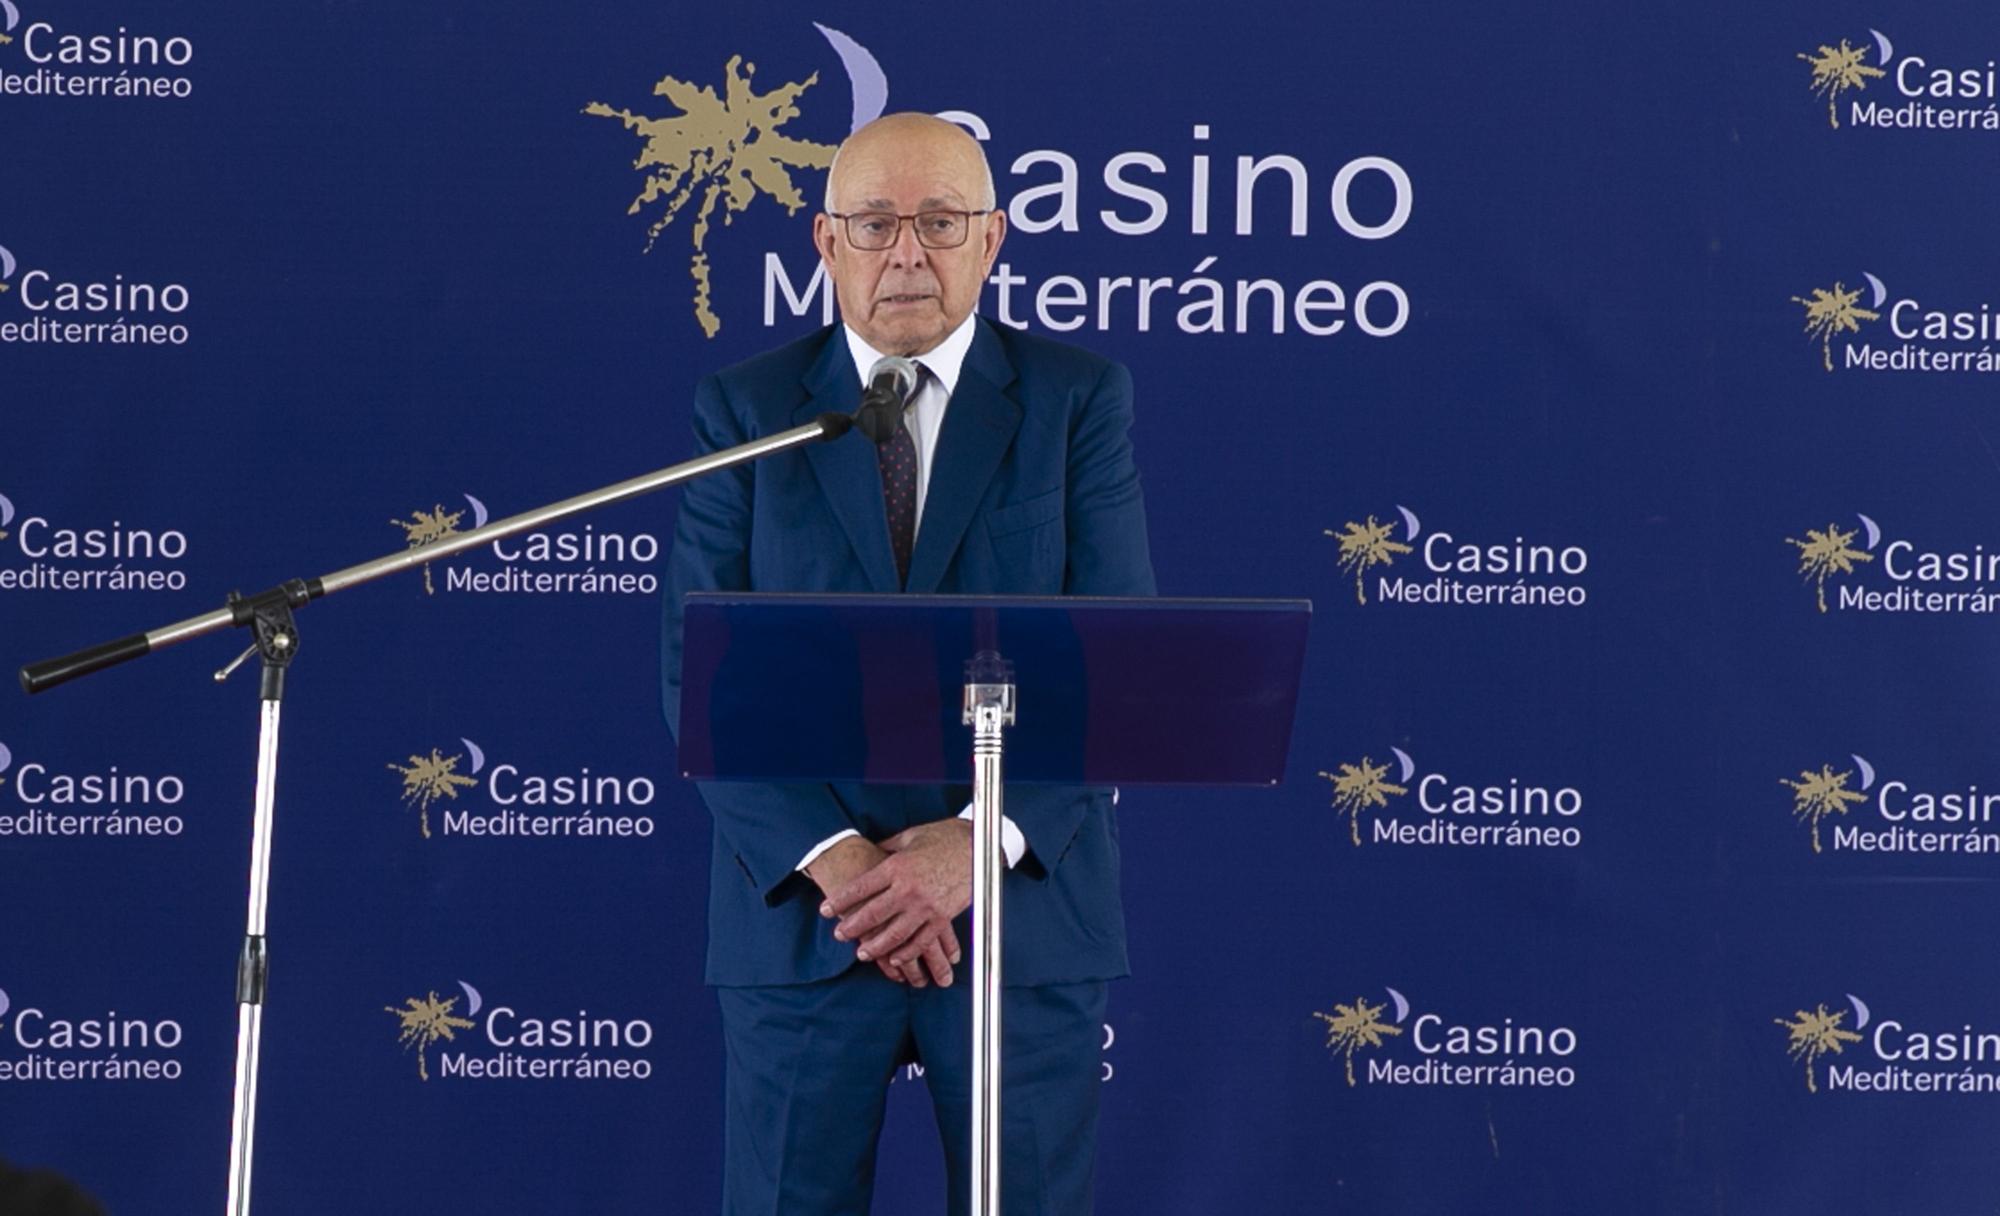 El Casino Mediterráneo de Ondara coloca su primera piedra